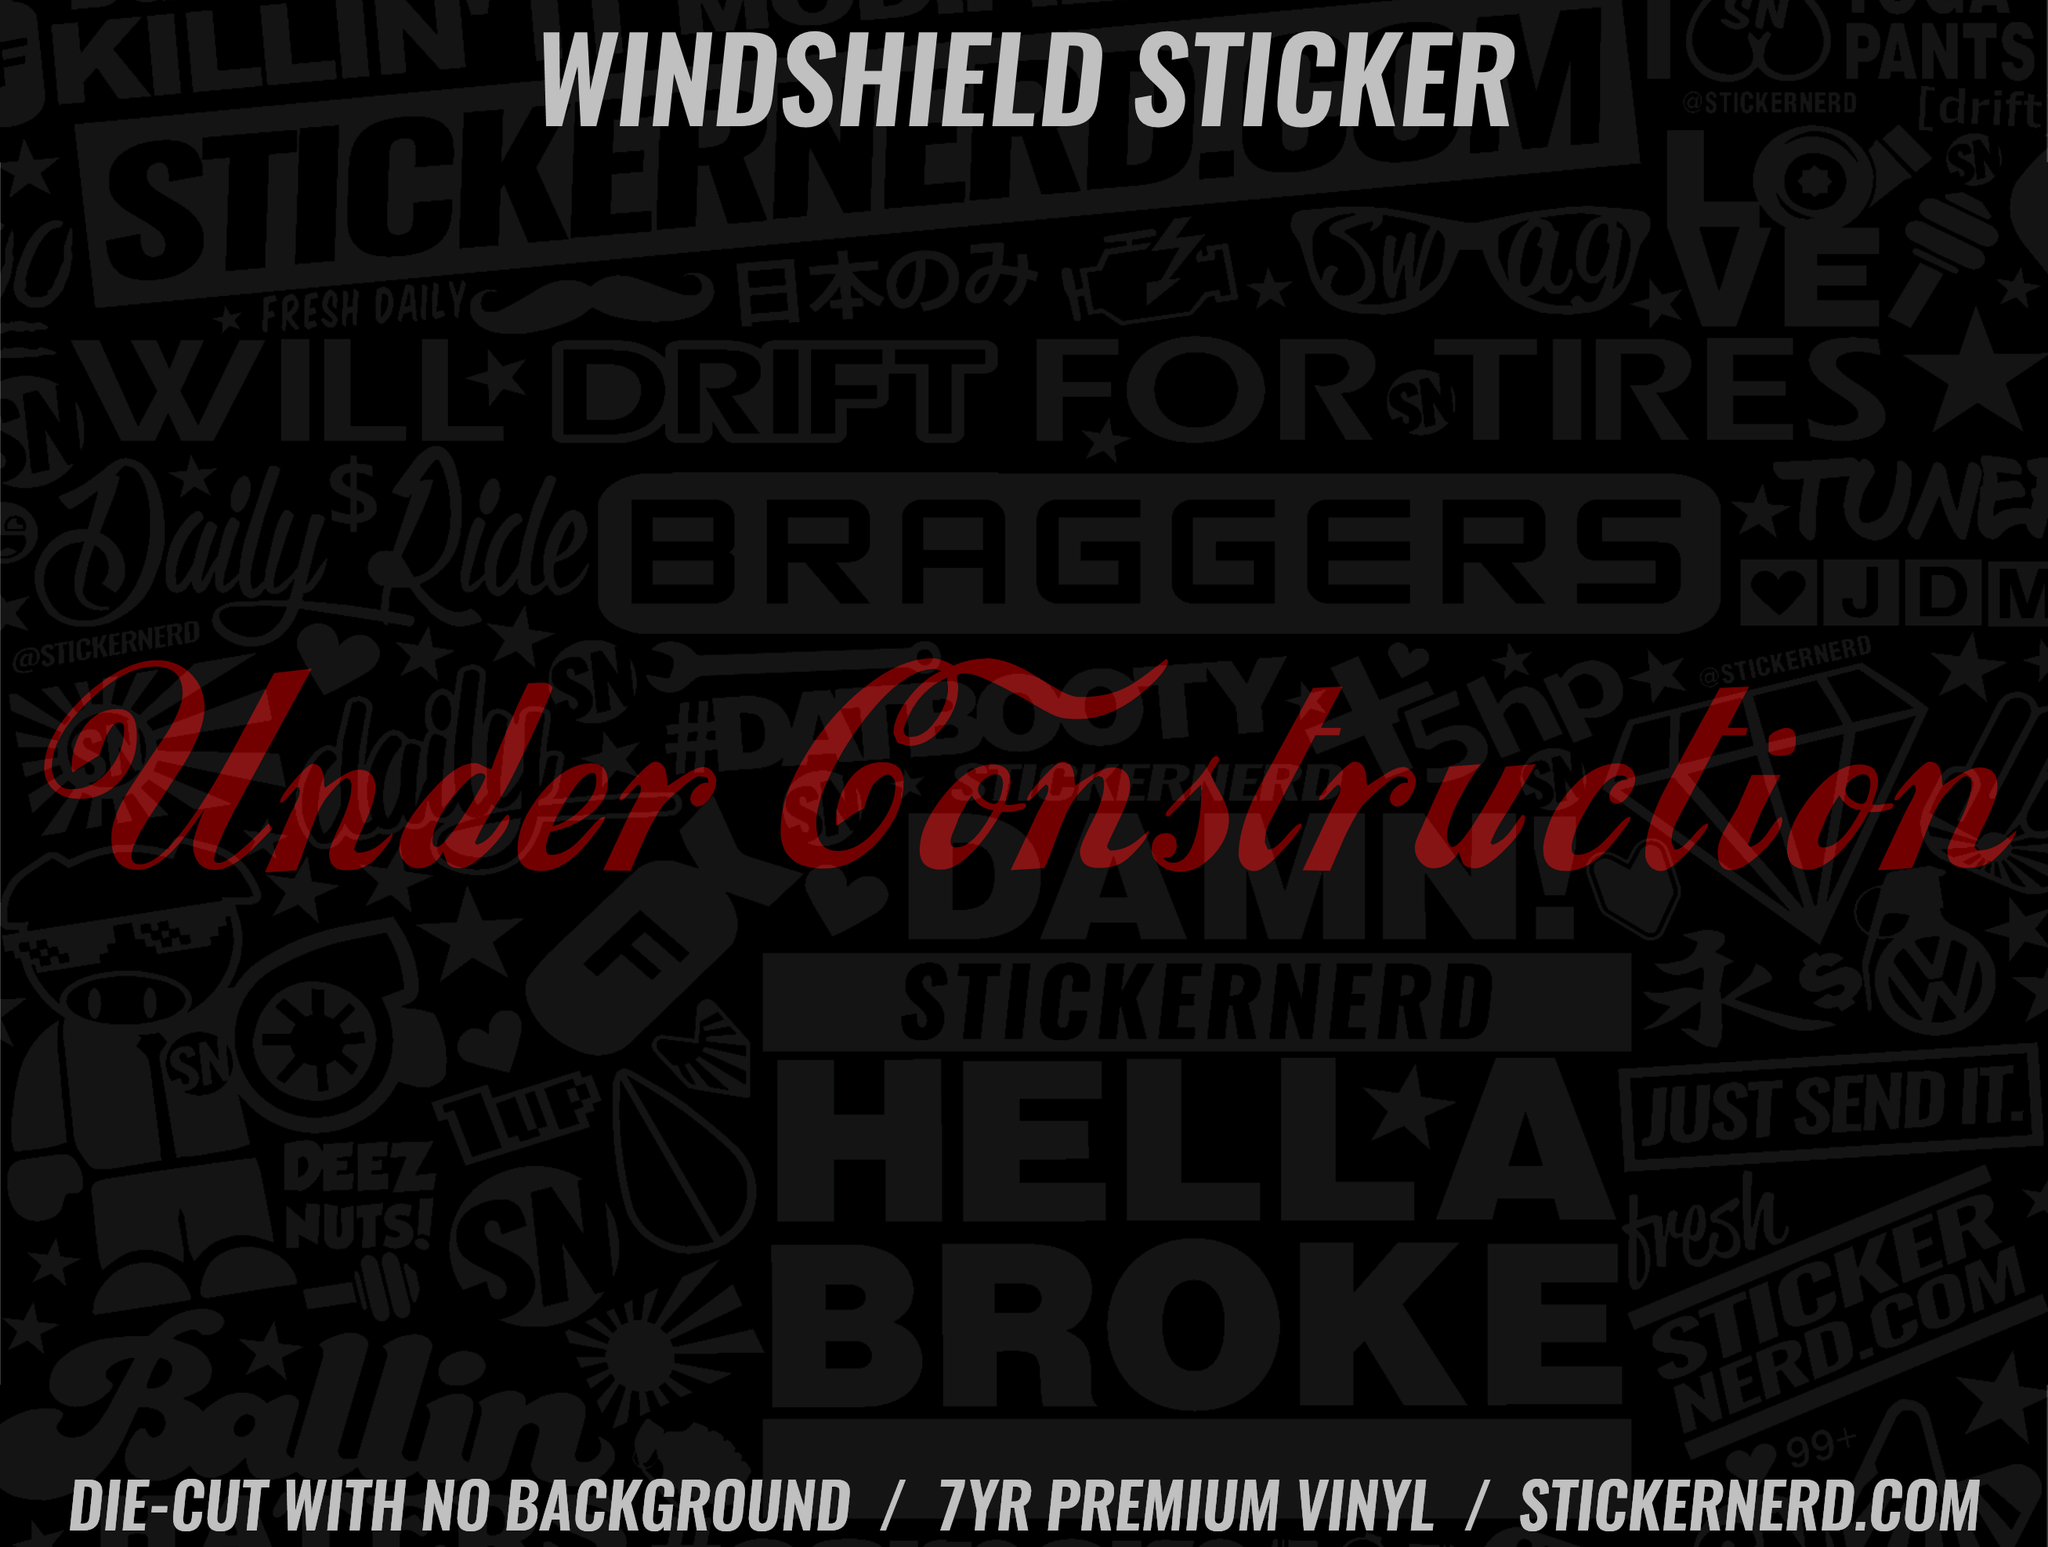 Under Construction Windshield Sticker - Decal - STICKERNERD.COM